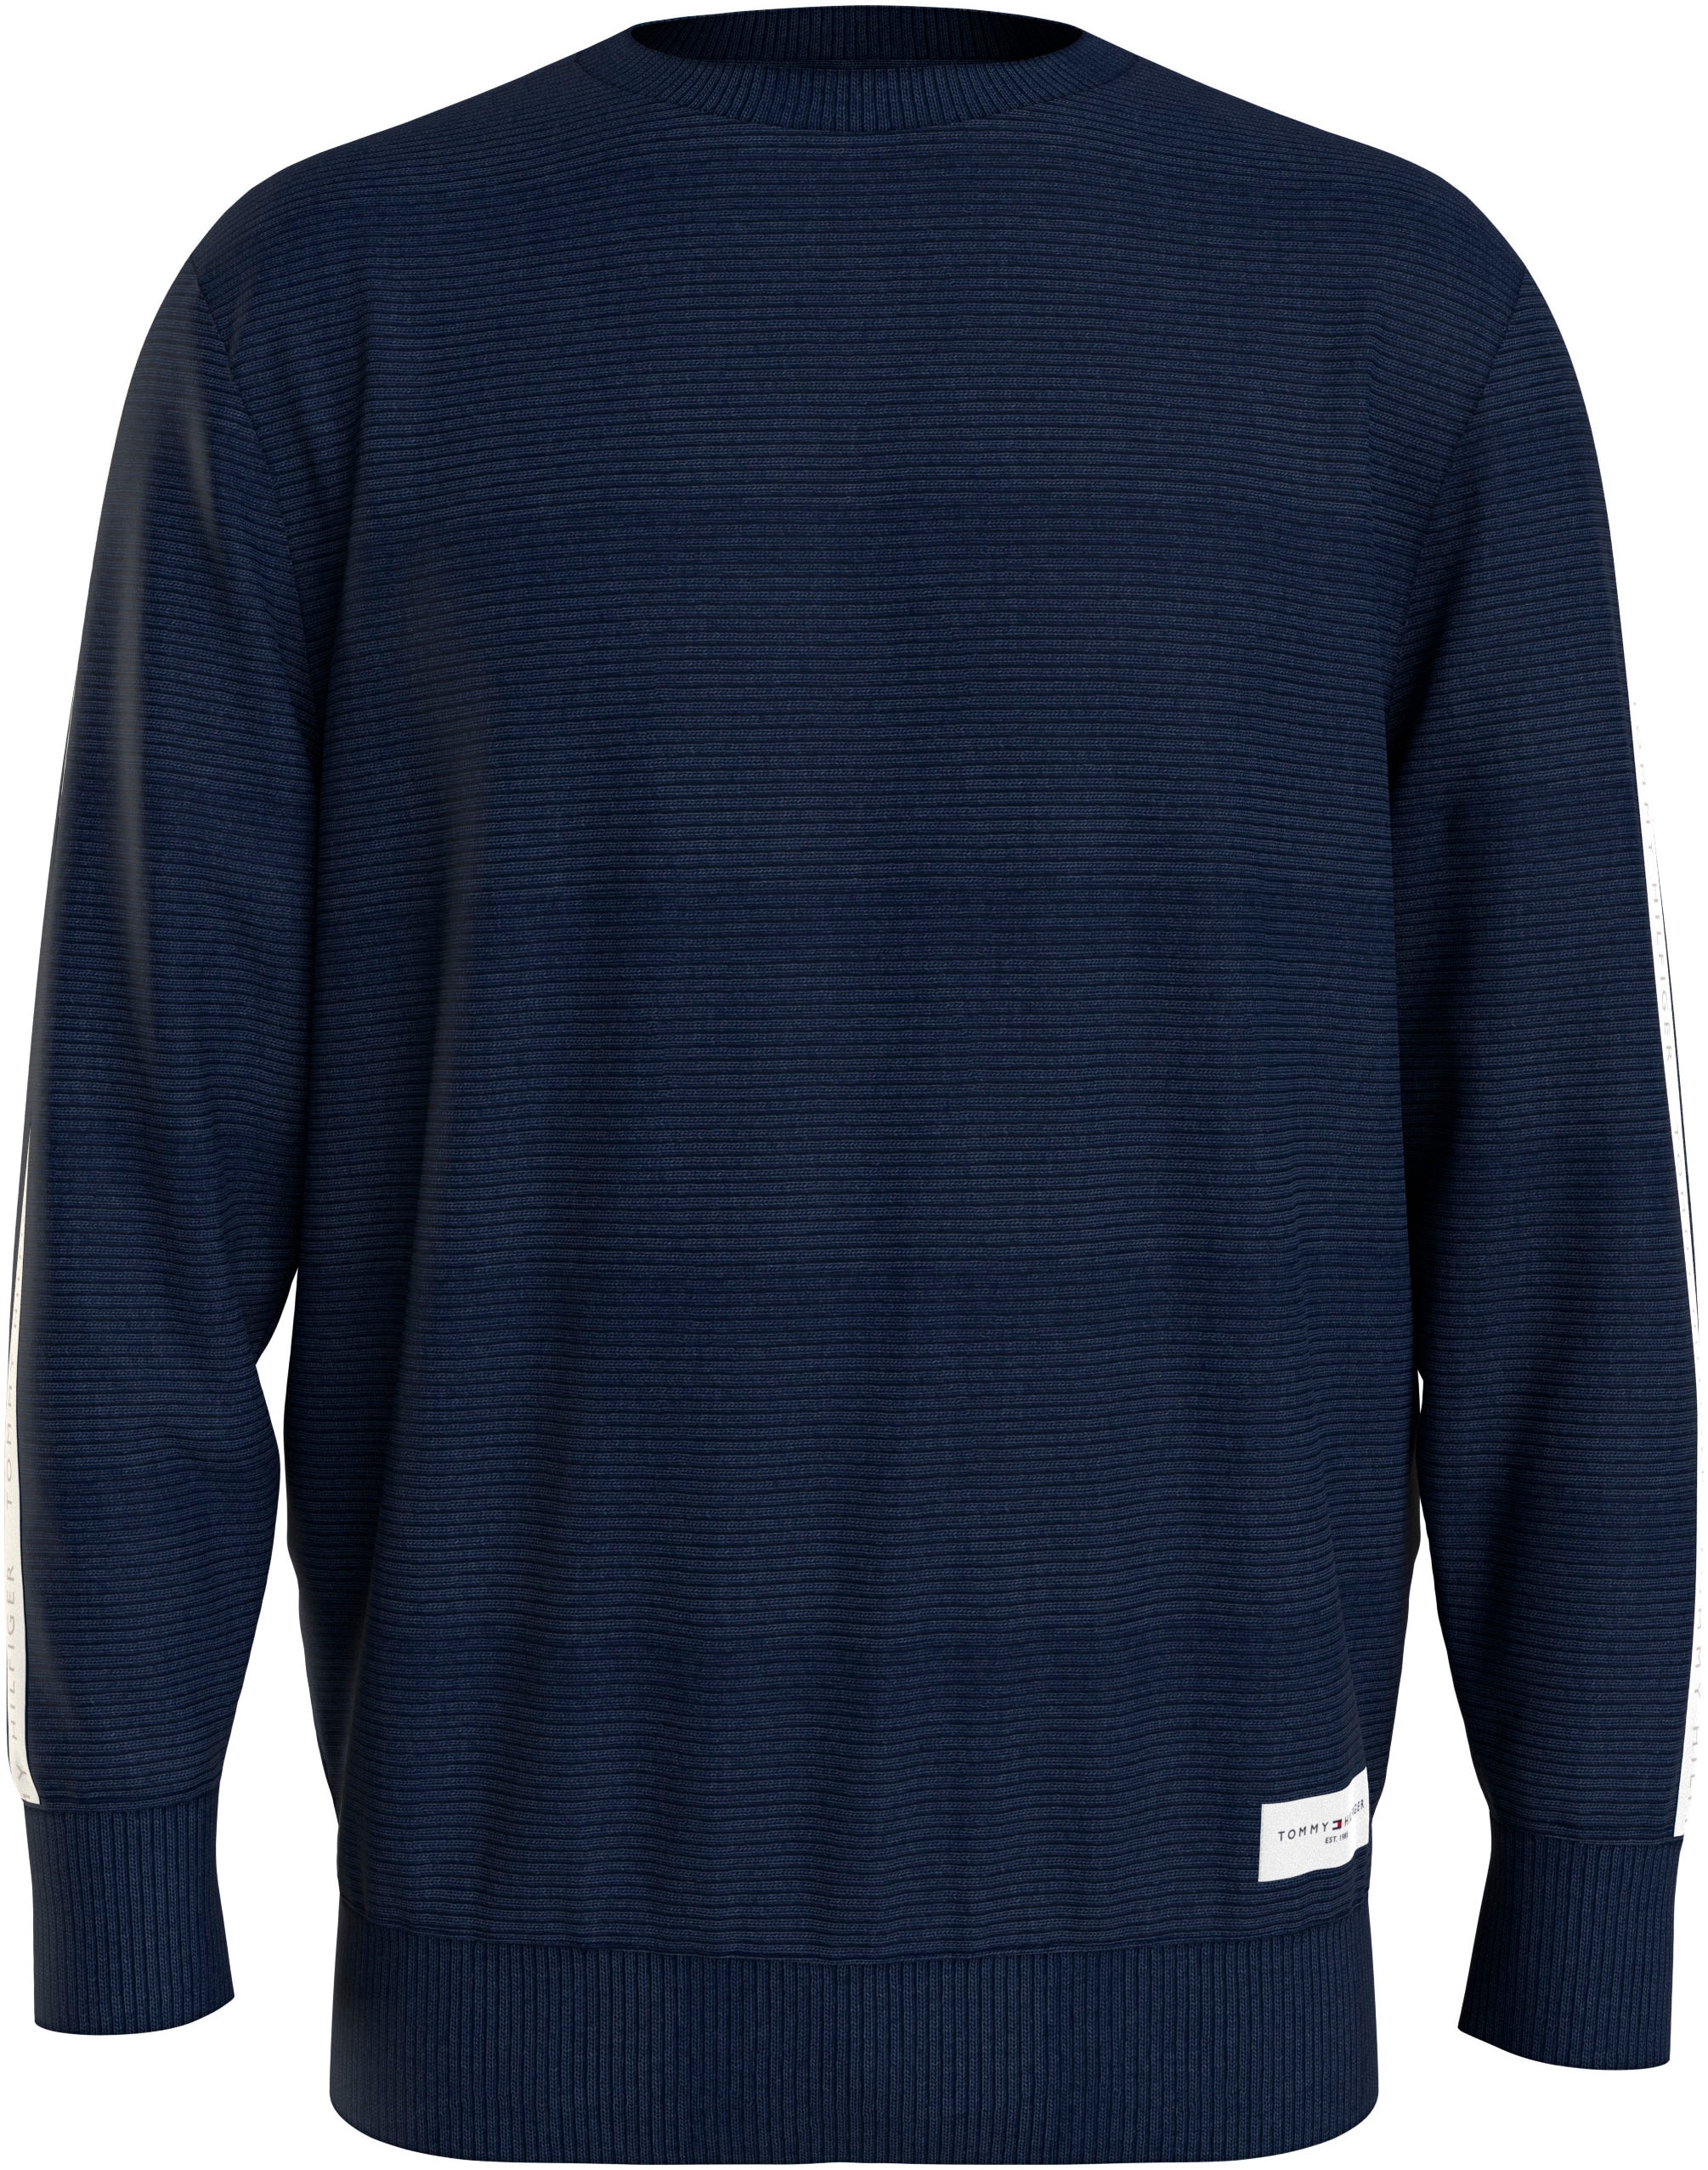 Sweater »HWK TRACK TOP«, mit Markenlabel an den Ärmeln